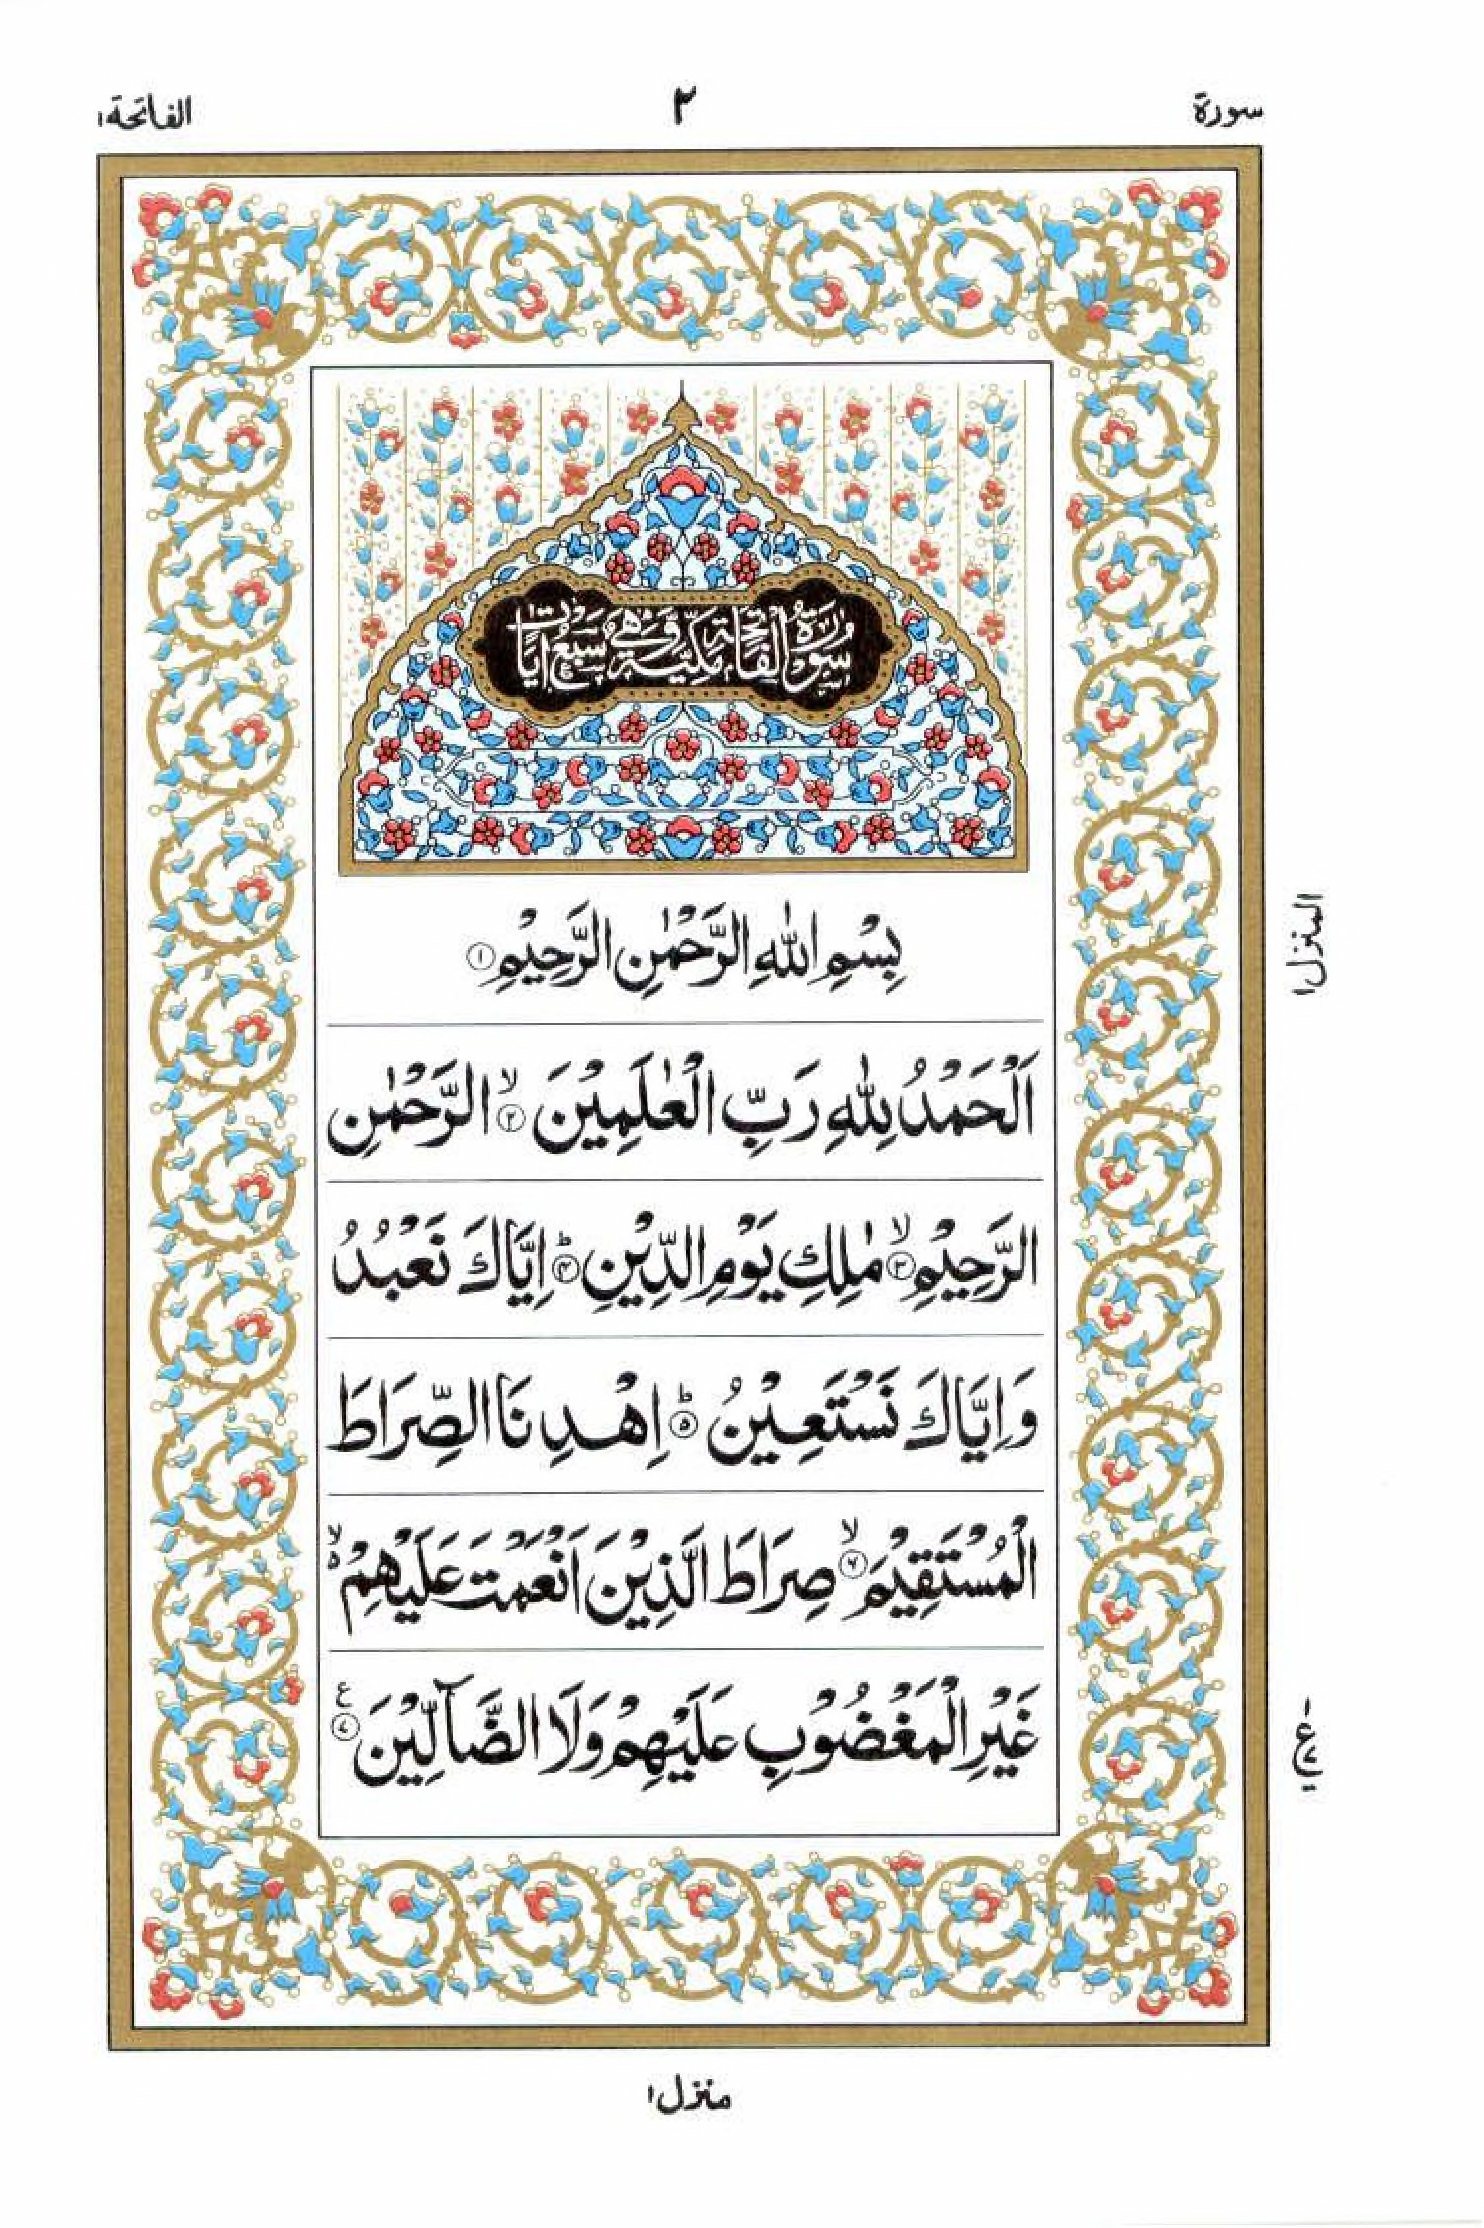 Read 15 Lines Al Quran Part 1 Page No 2, Practice Quran